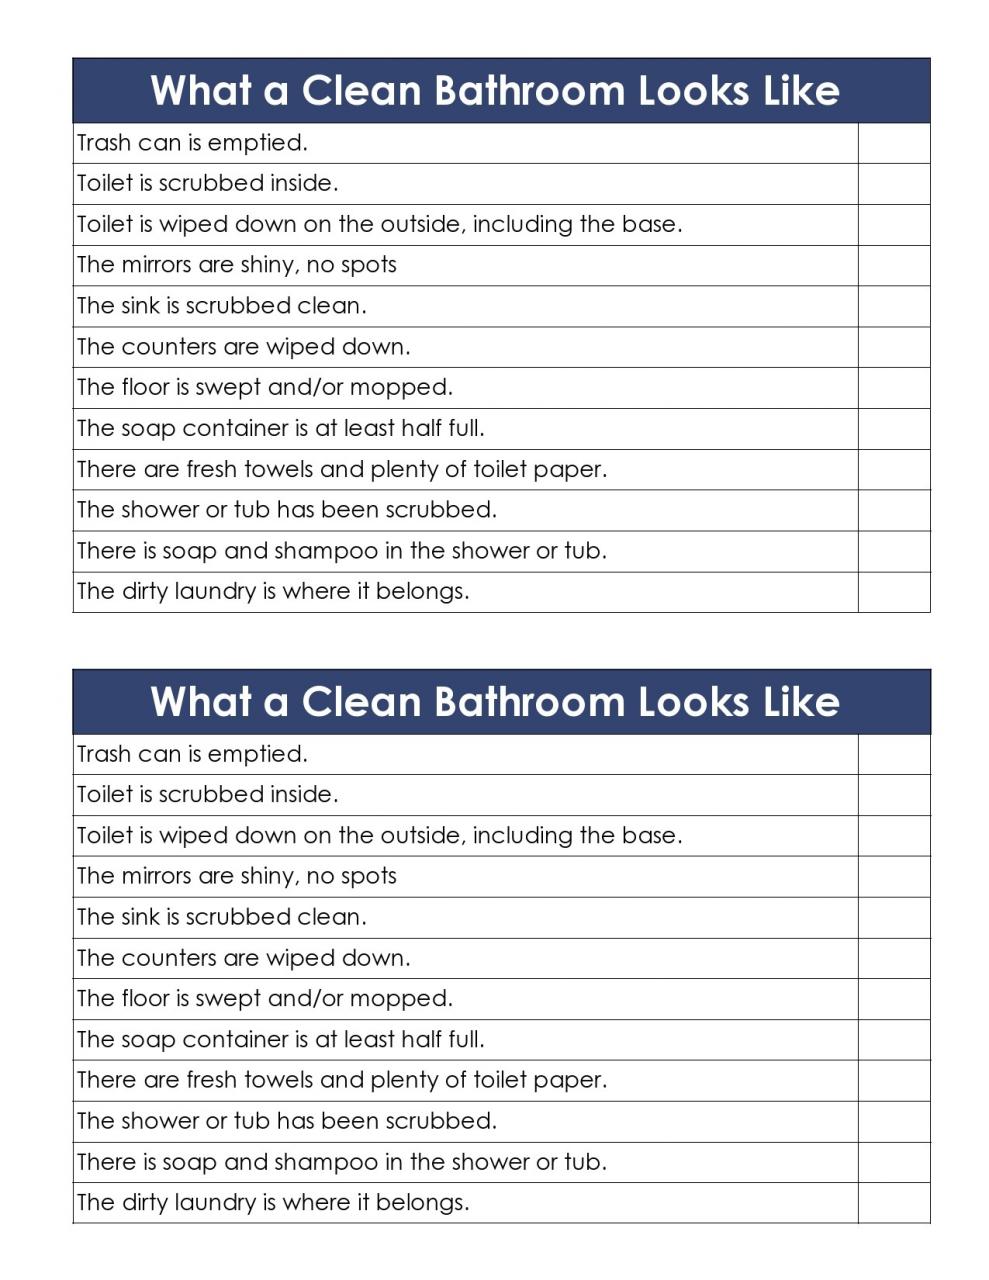 Lista de verificación de limpieza de baño gratis 03